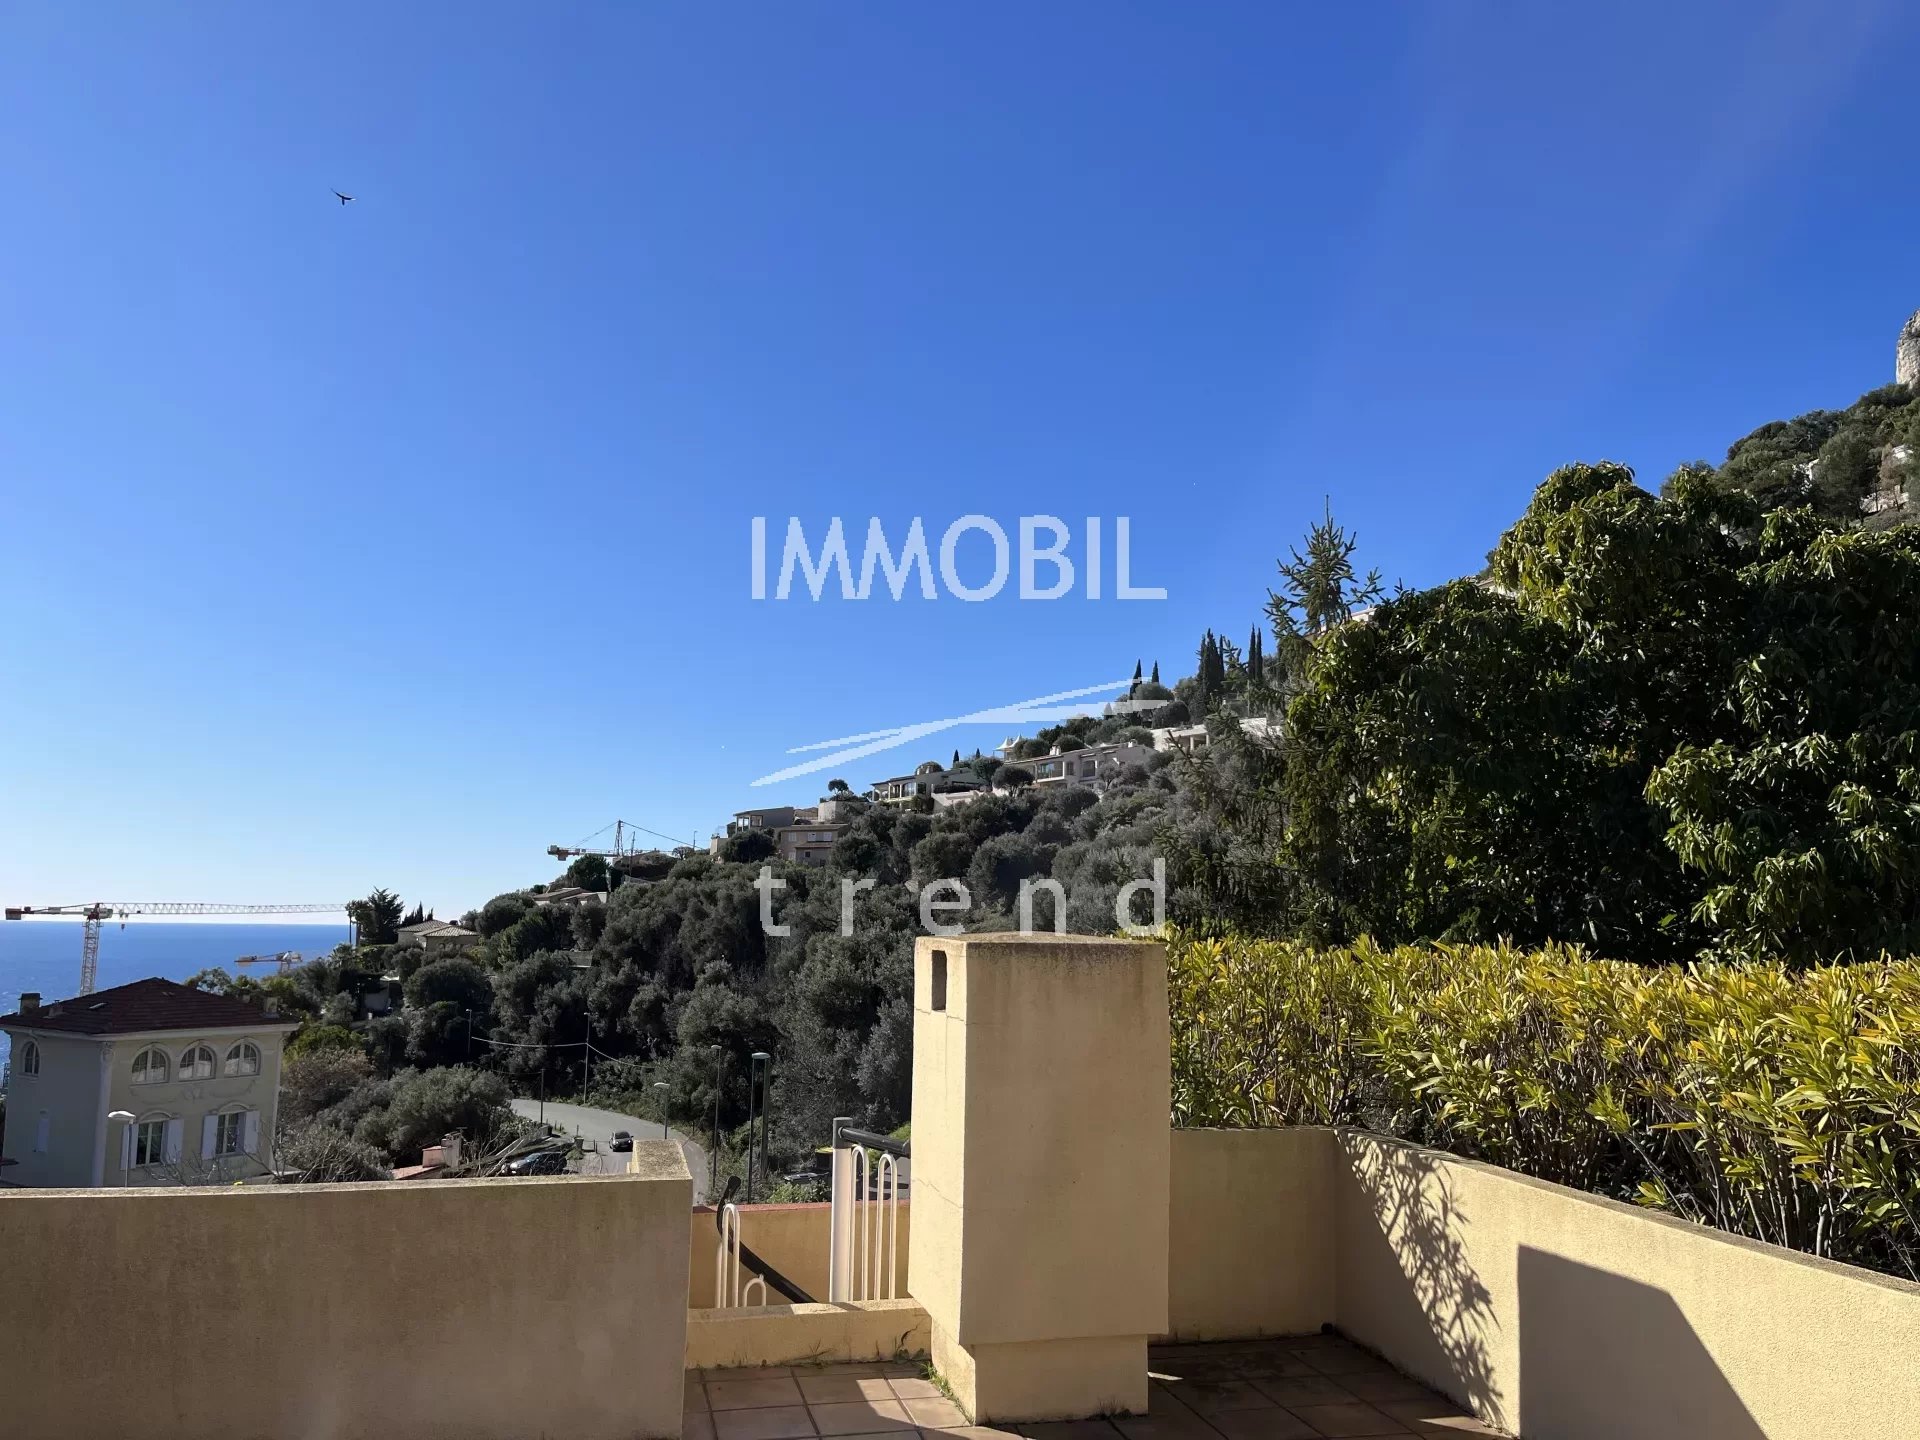 Immobilier proche Monaco - A vendre belle maison contemporaine avec vue mer, terrasses et jardin, limitrophe Monaco